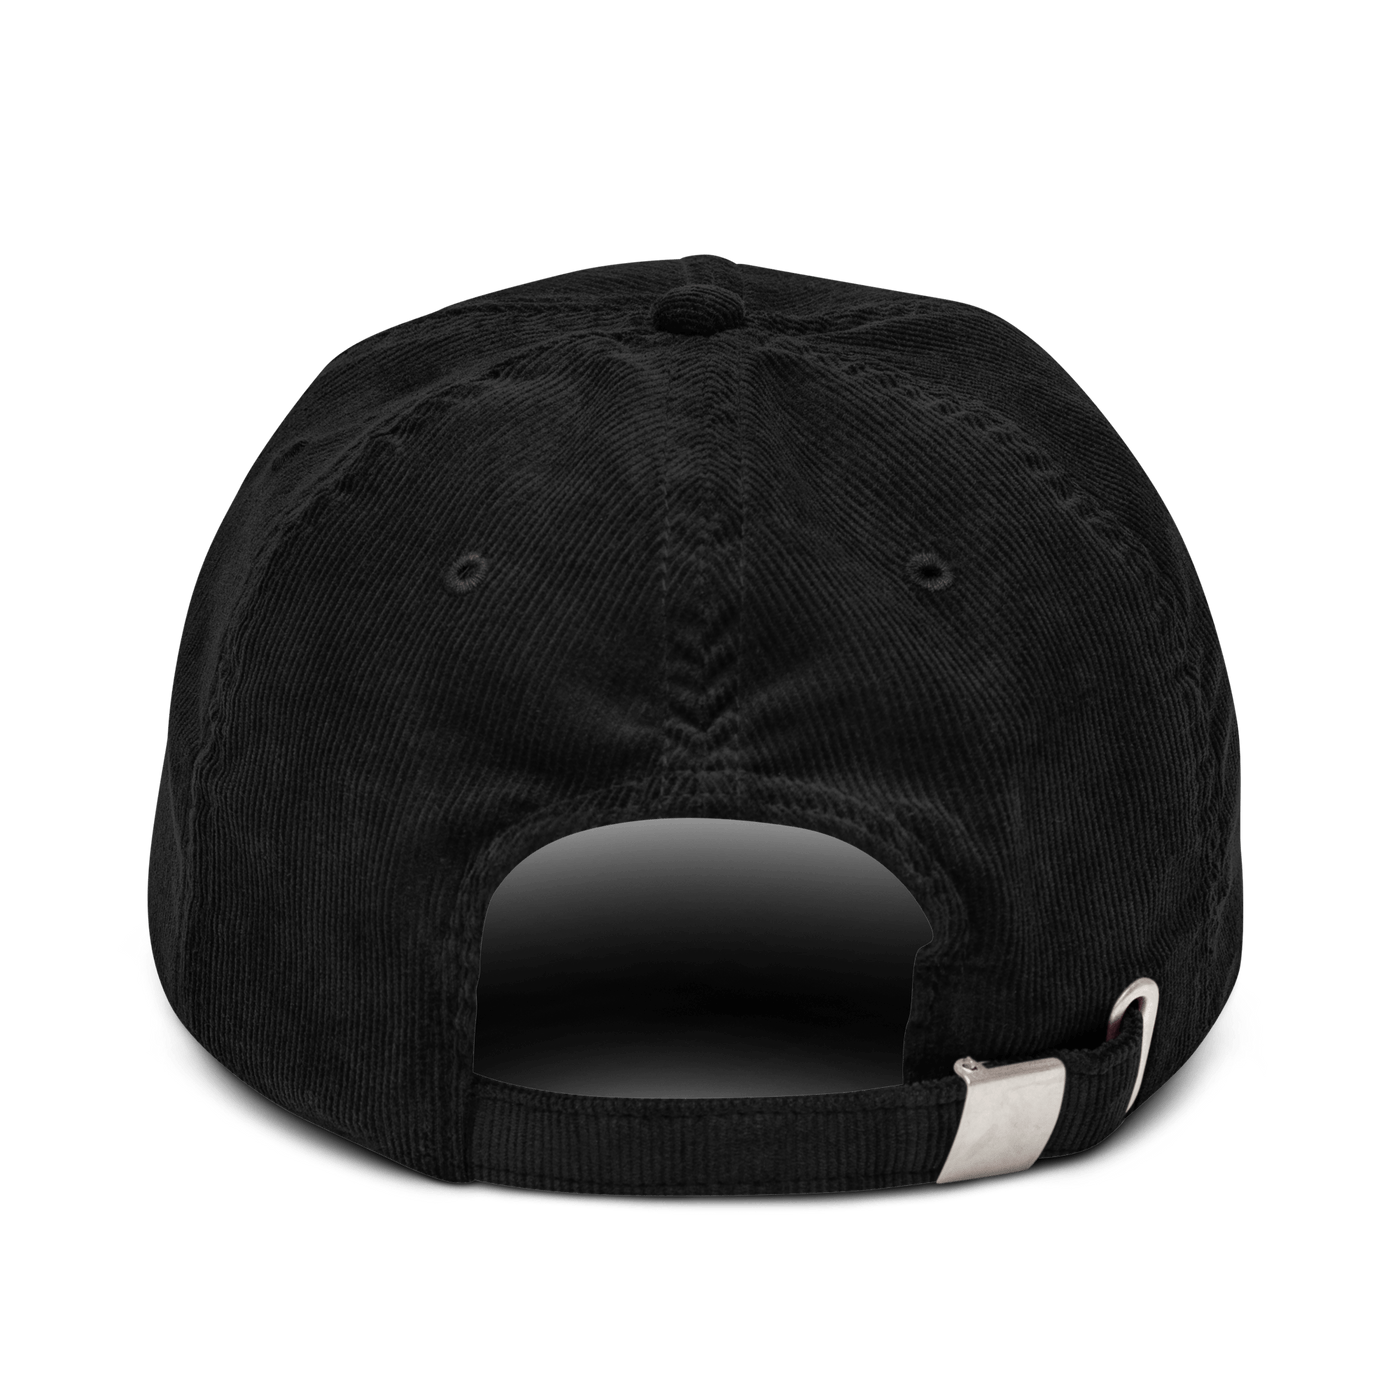 Après Ski Corduroy hat - Black - - Just Another Cap Store